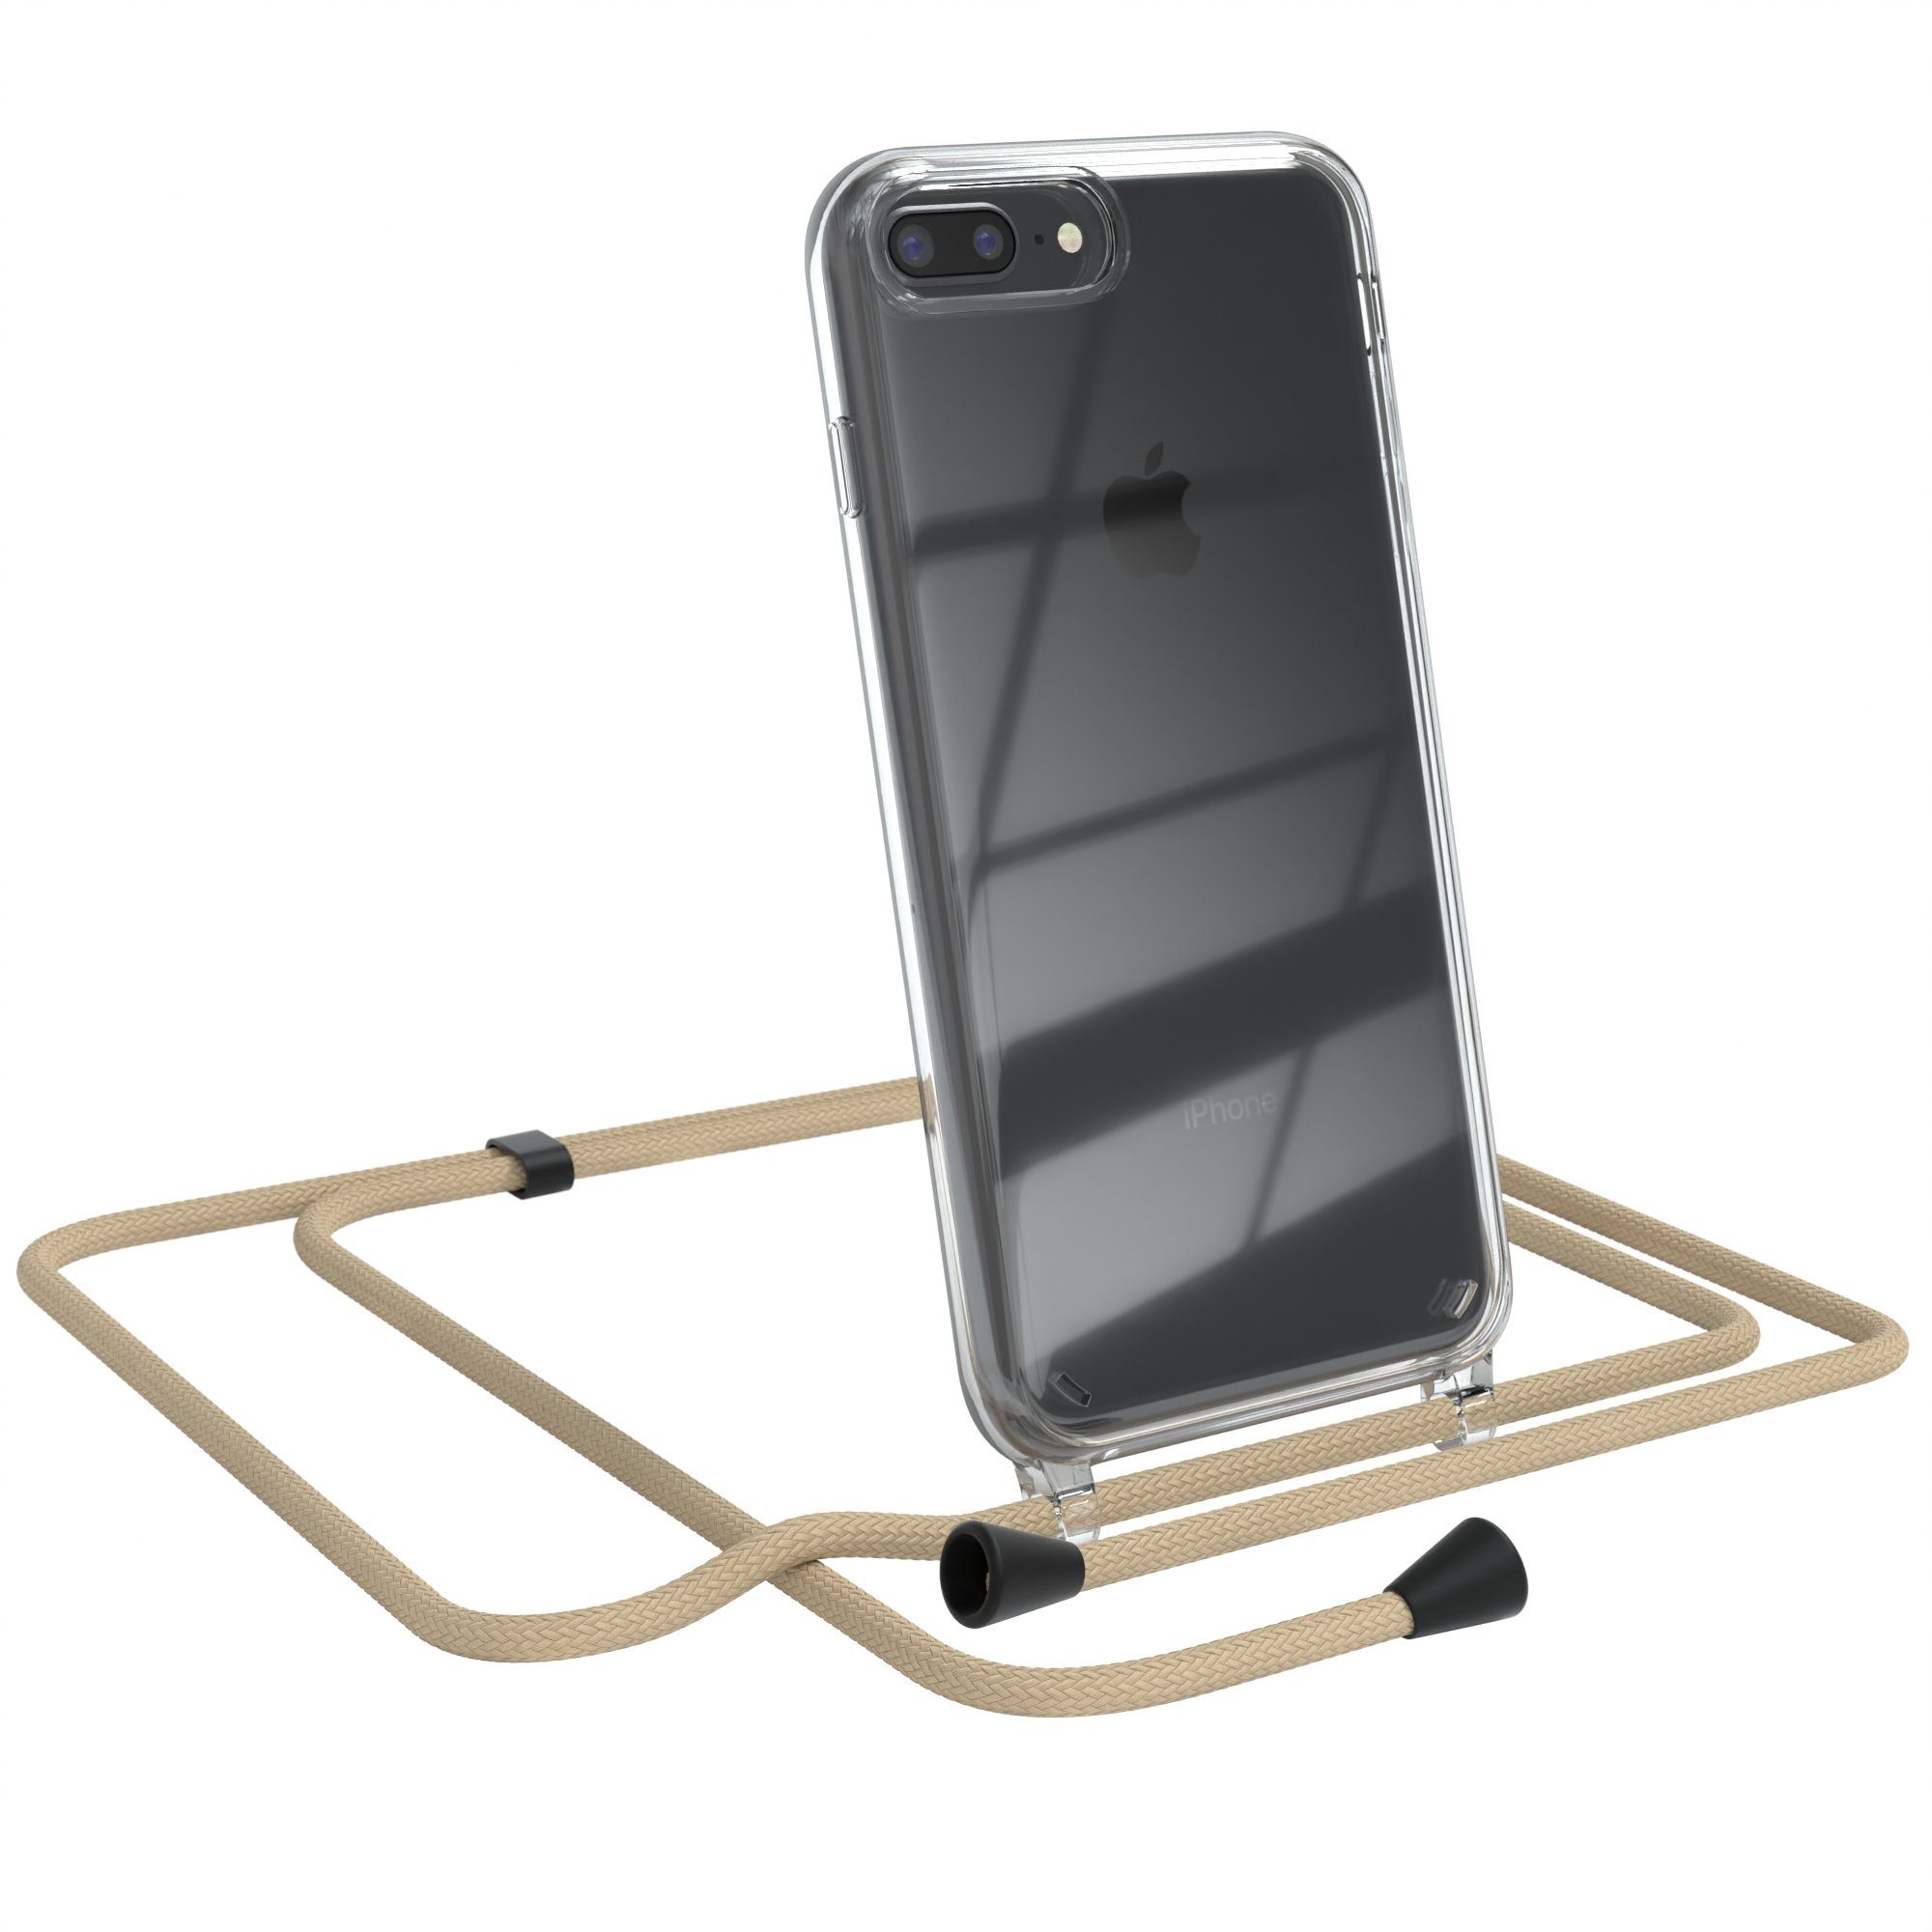 EAZY CASE Handykette Clips Schwarz für Apple iPhone 8 Plus / iPhone 7+ 5,5  Zoll, Handykordel Umhängetasche für Handy Hülle durchsichtig Beige Taupe